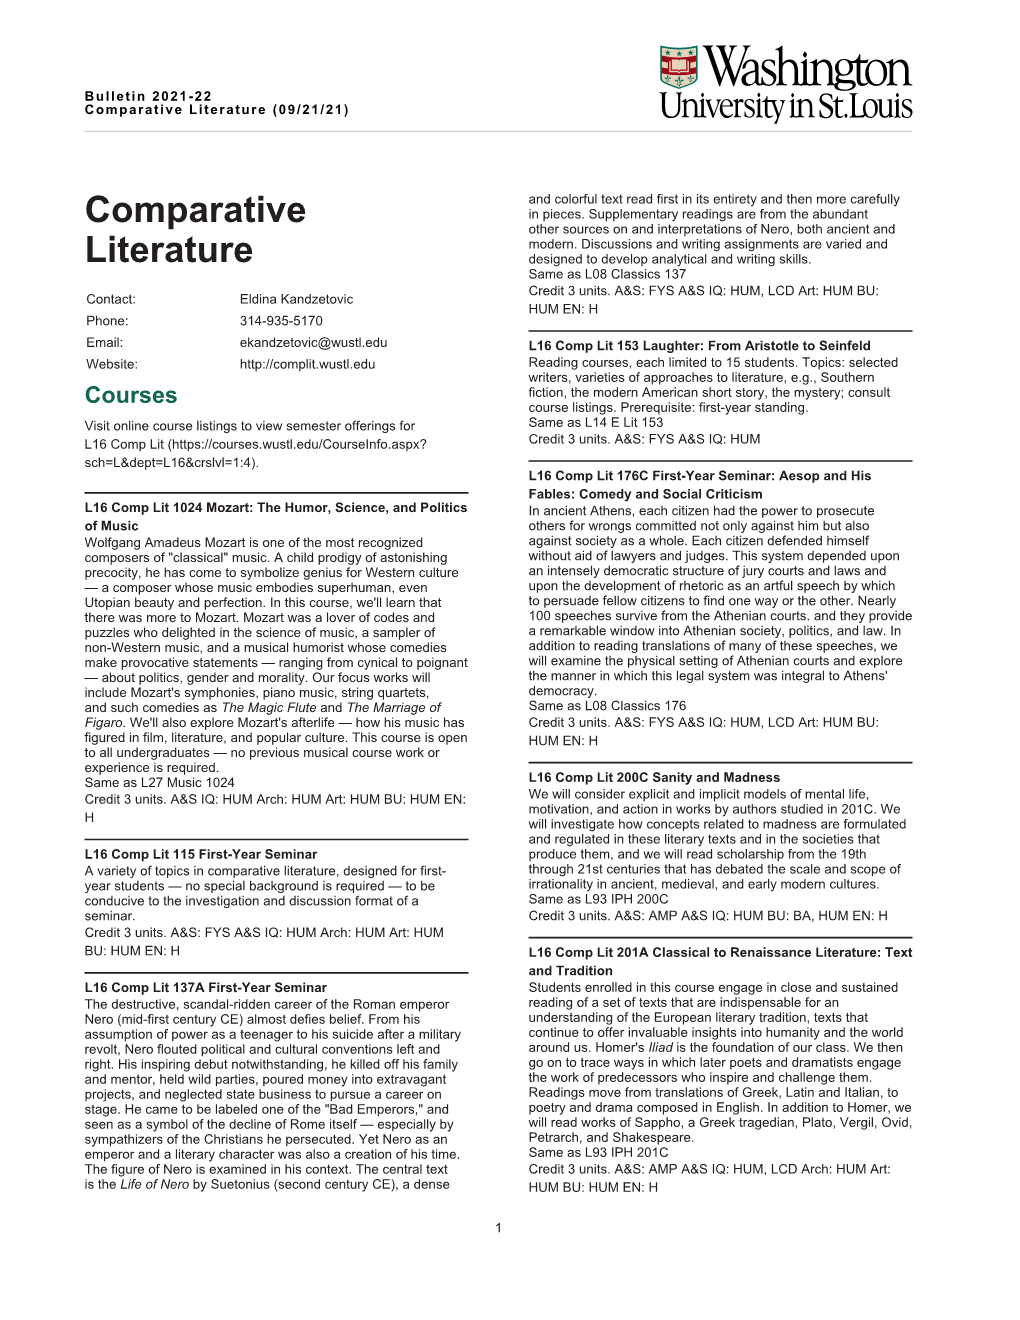 Comparative Literature (09/21/21)